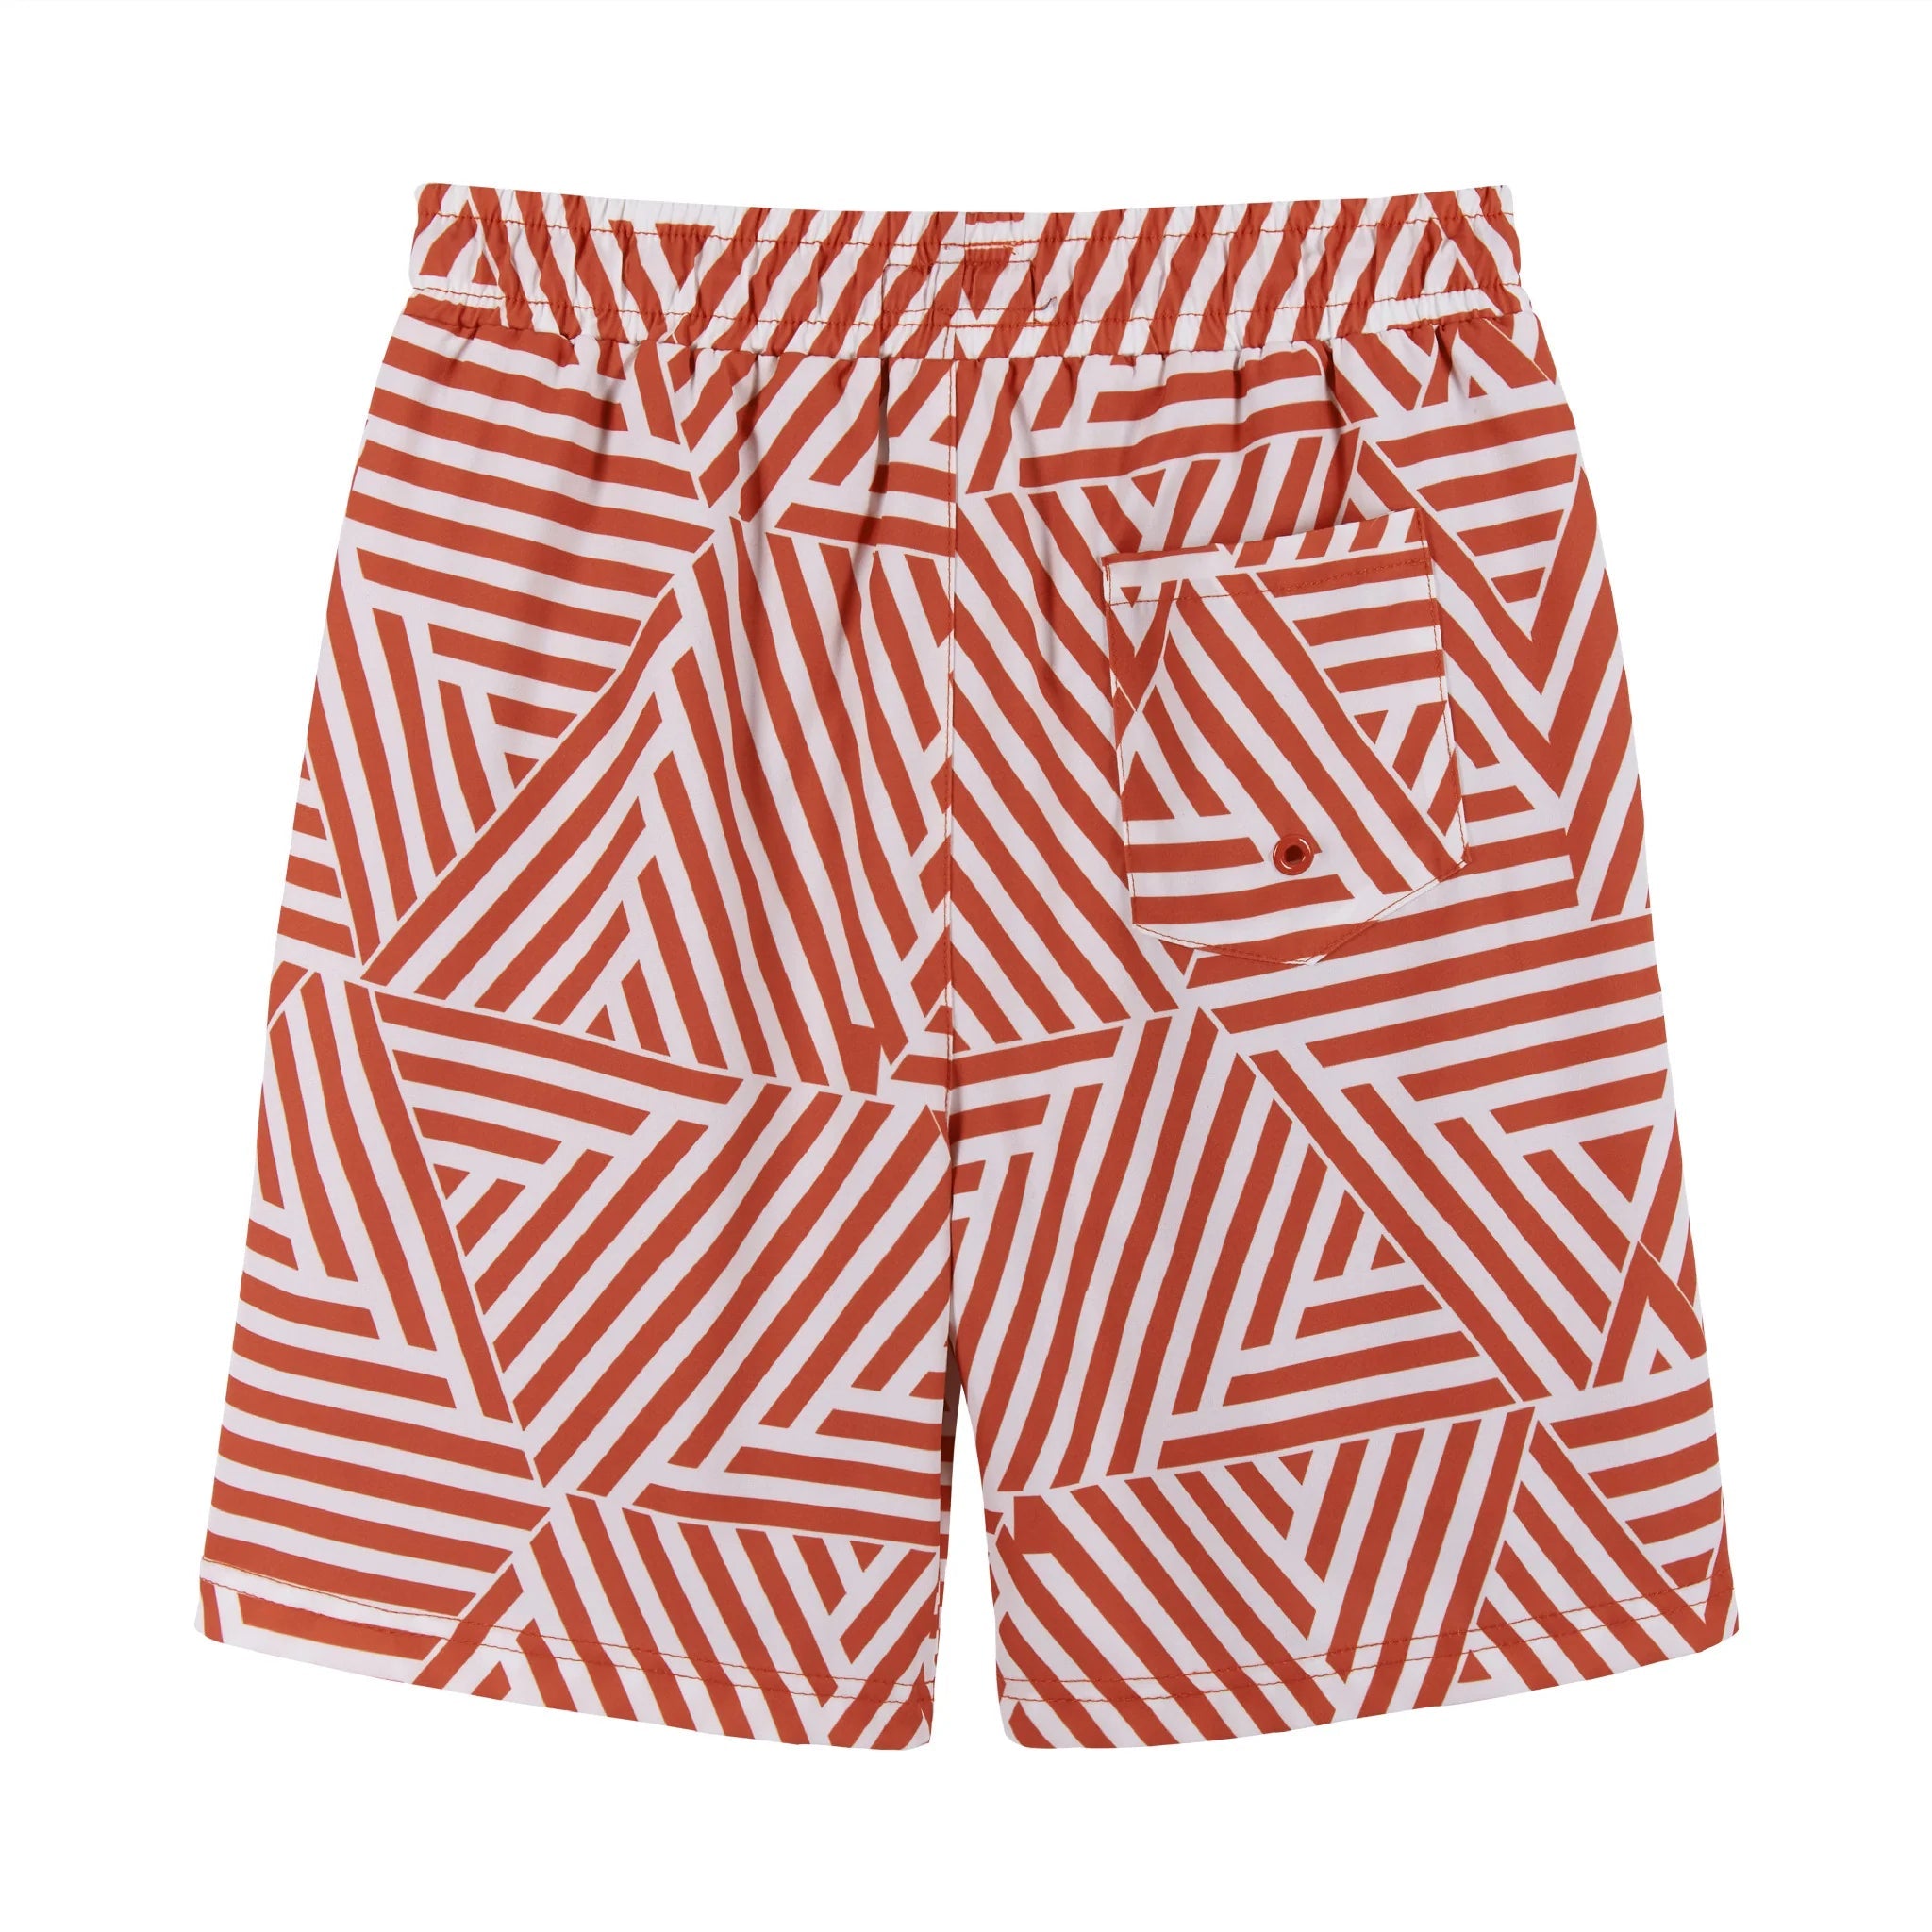 Andy & Evan Tween UPF 50+ Orange Geometric Print Comfort Lined Boardshort-ANDY & EVAN-Little Giant Kidz